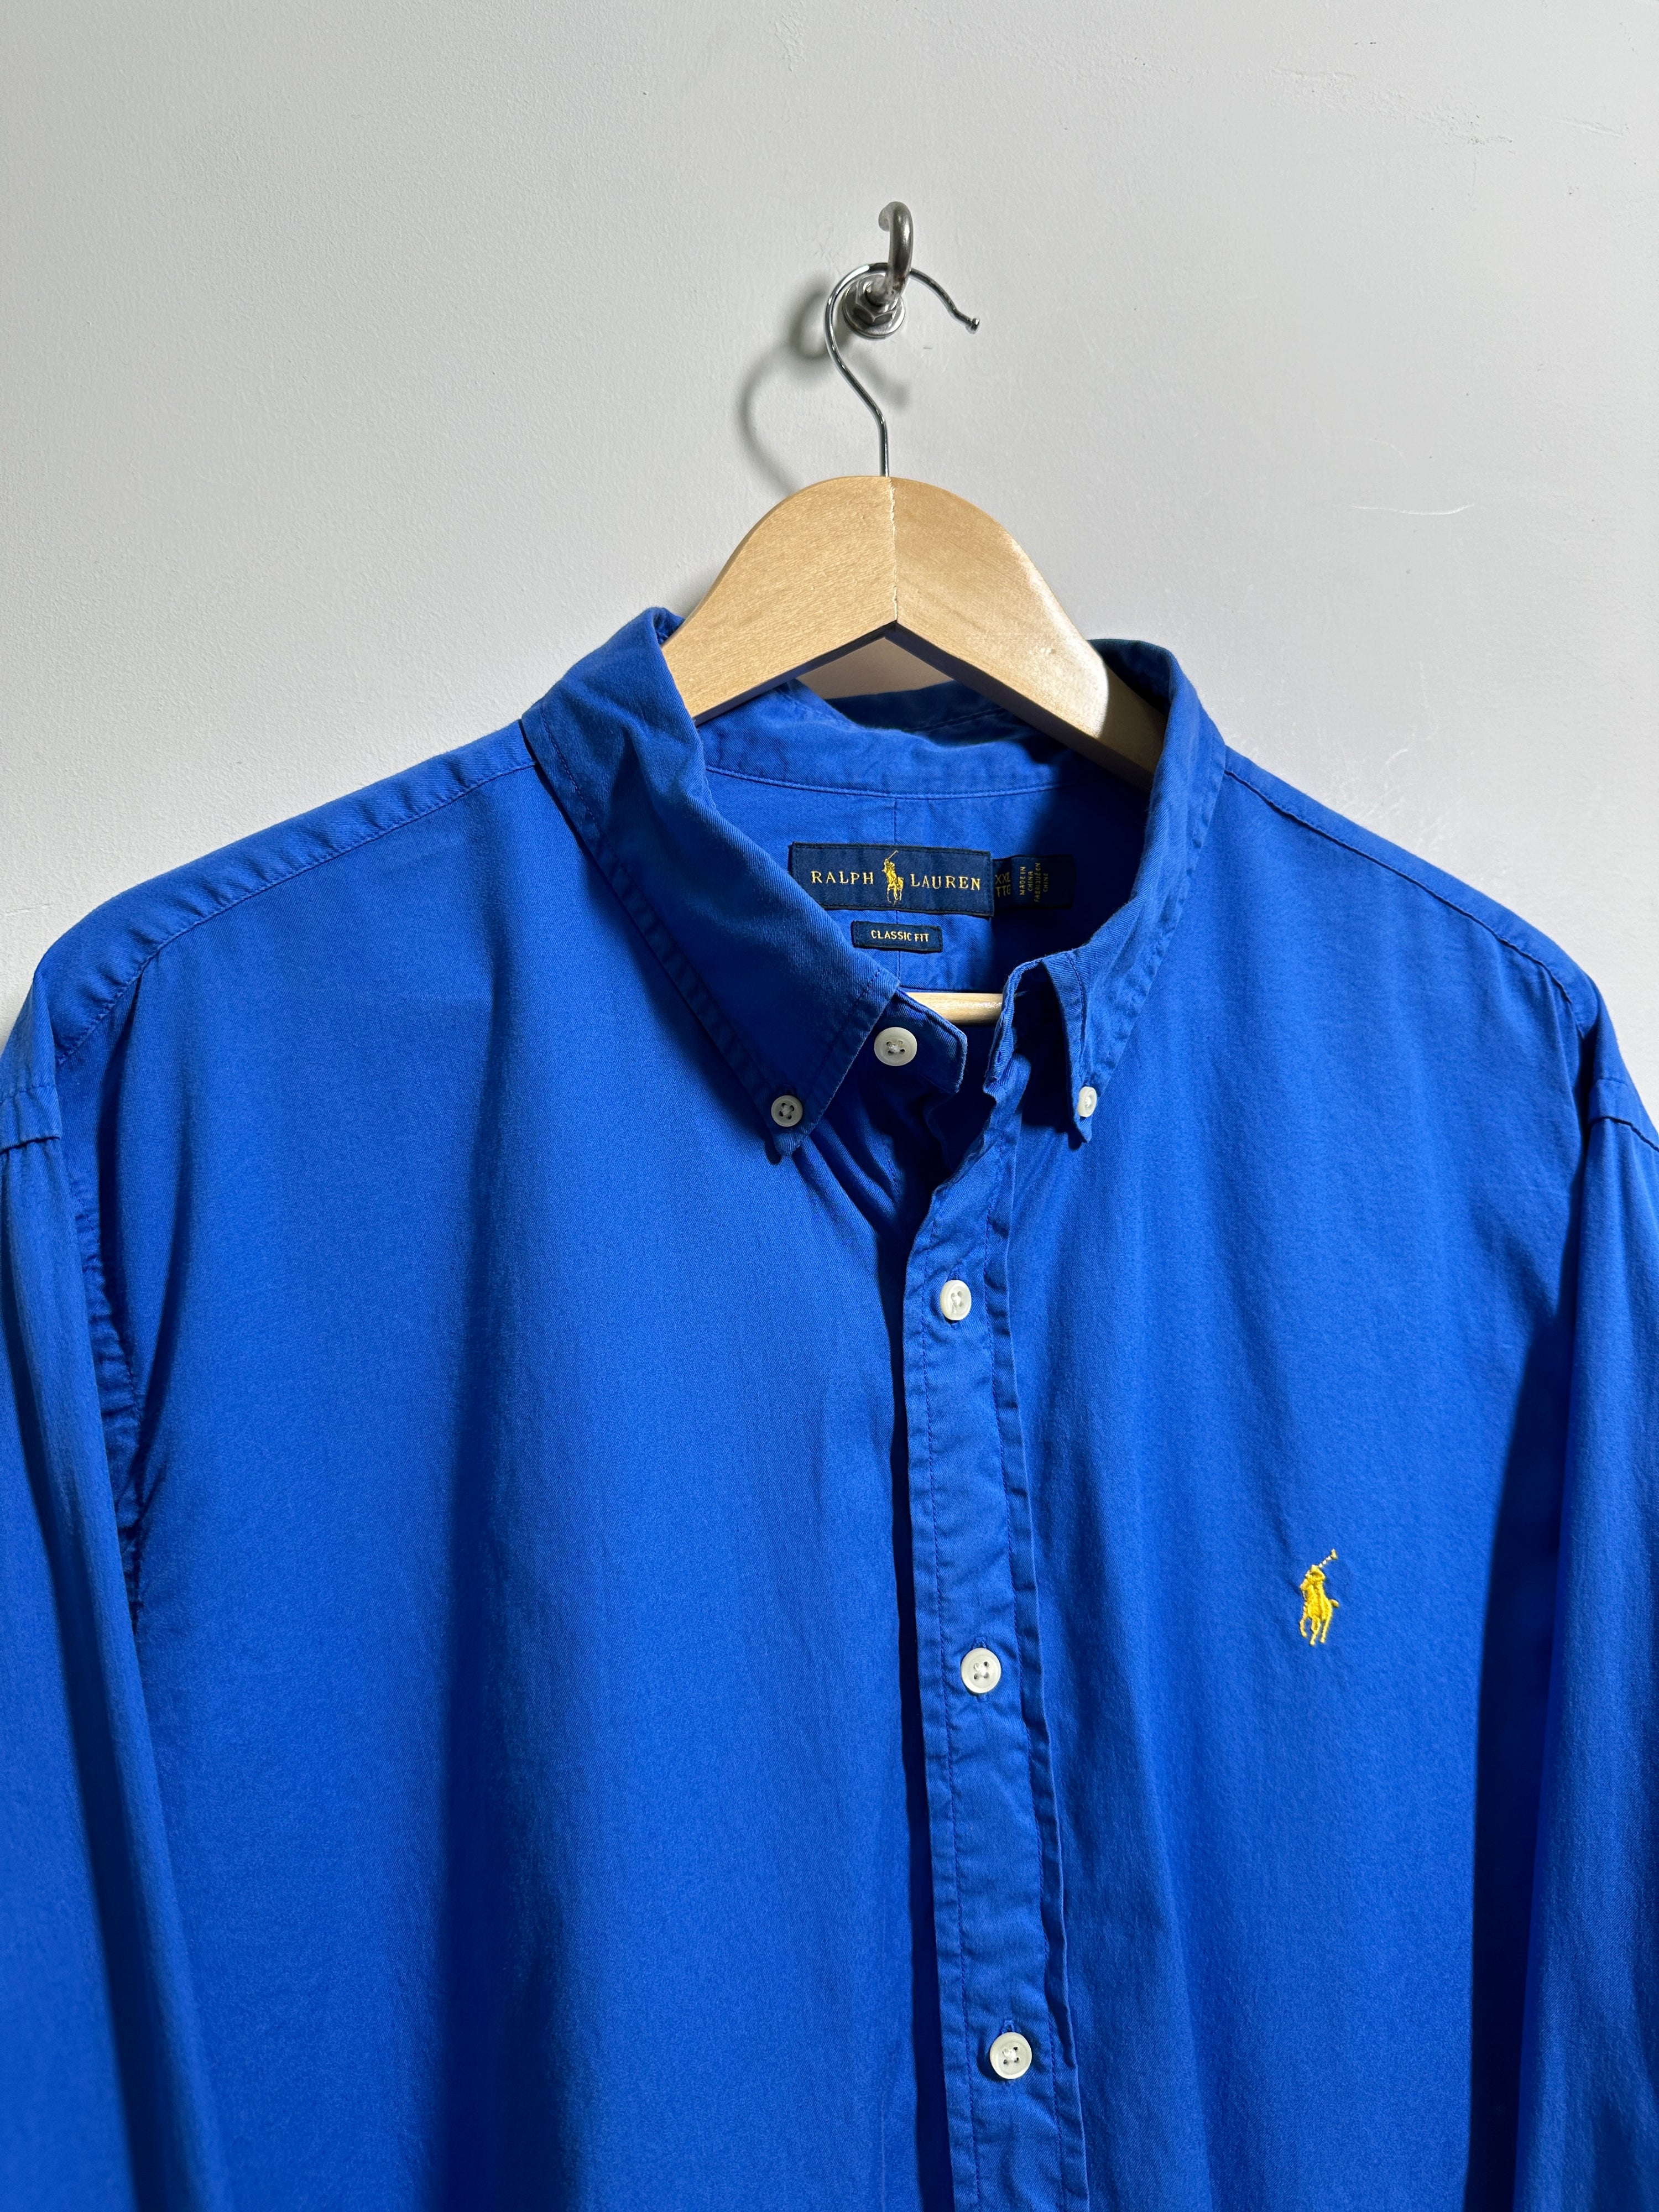 RALPH LAUREN long-sleeve shirt in blue